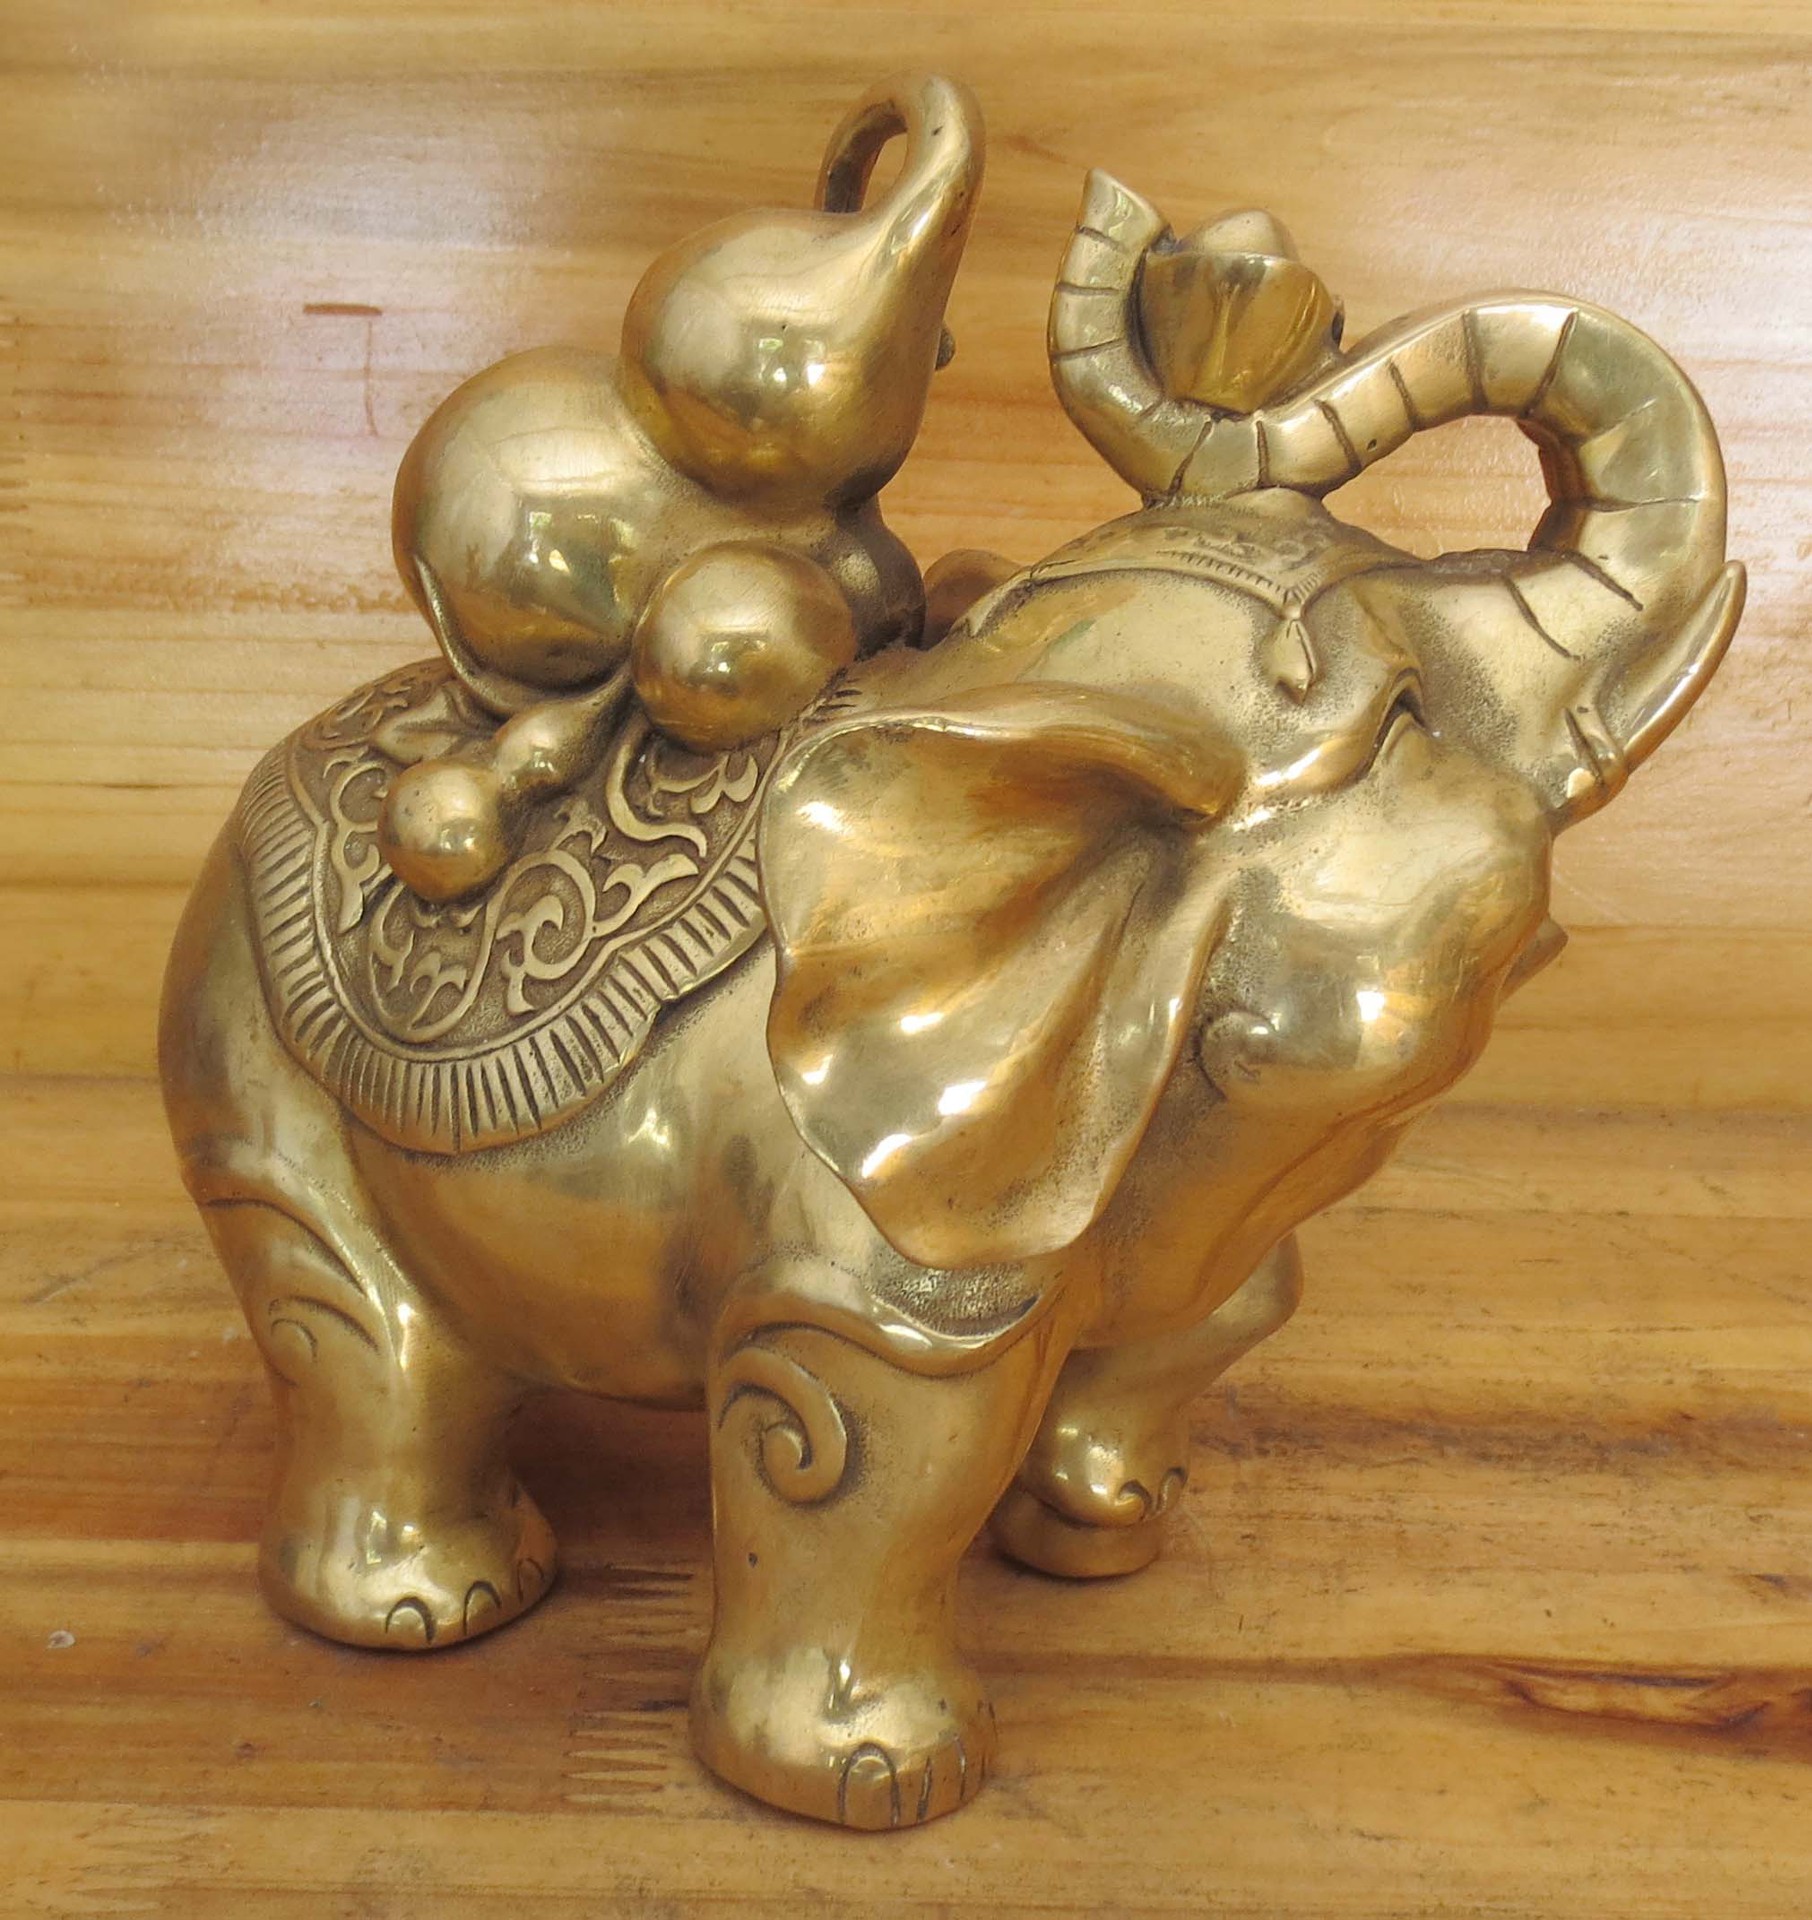 饰品,工艺品,礼品 其他工艺品 金属工艺品 开光铜摆件 铜大象 铜象 铜